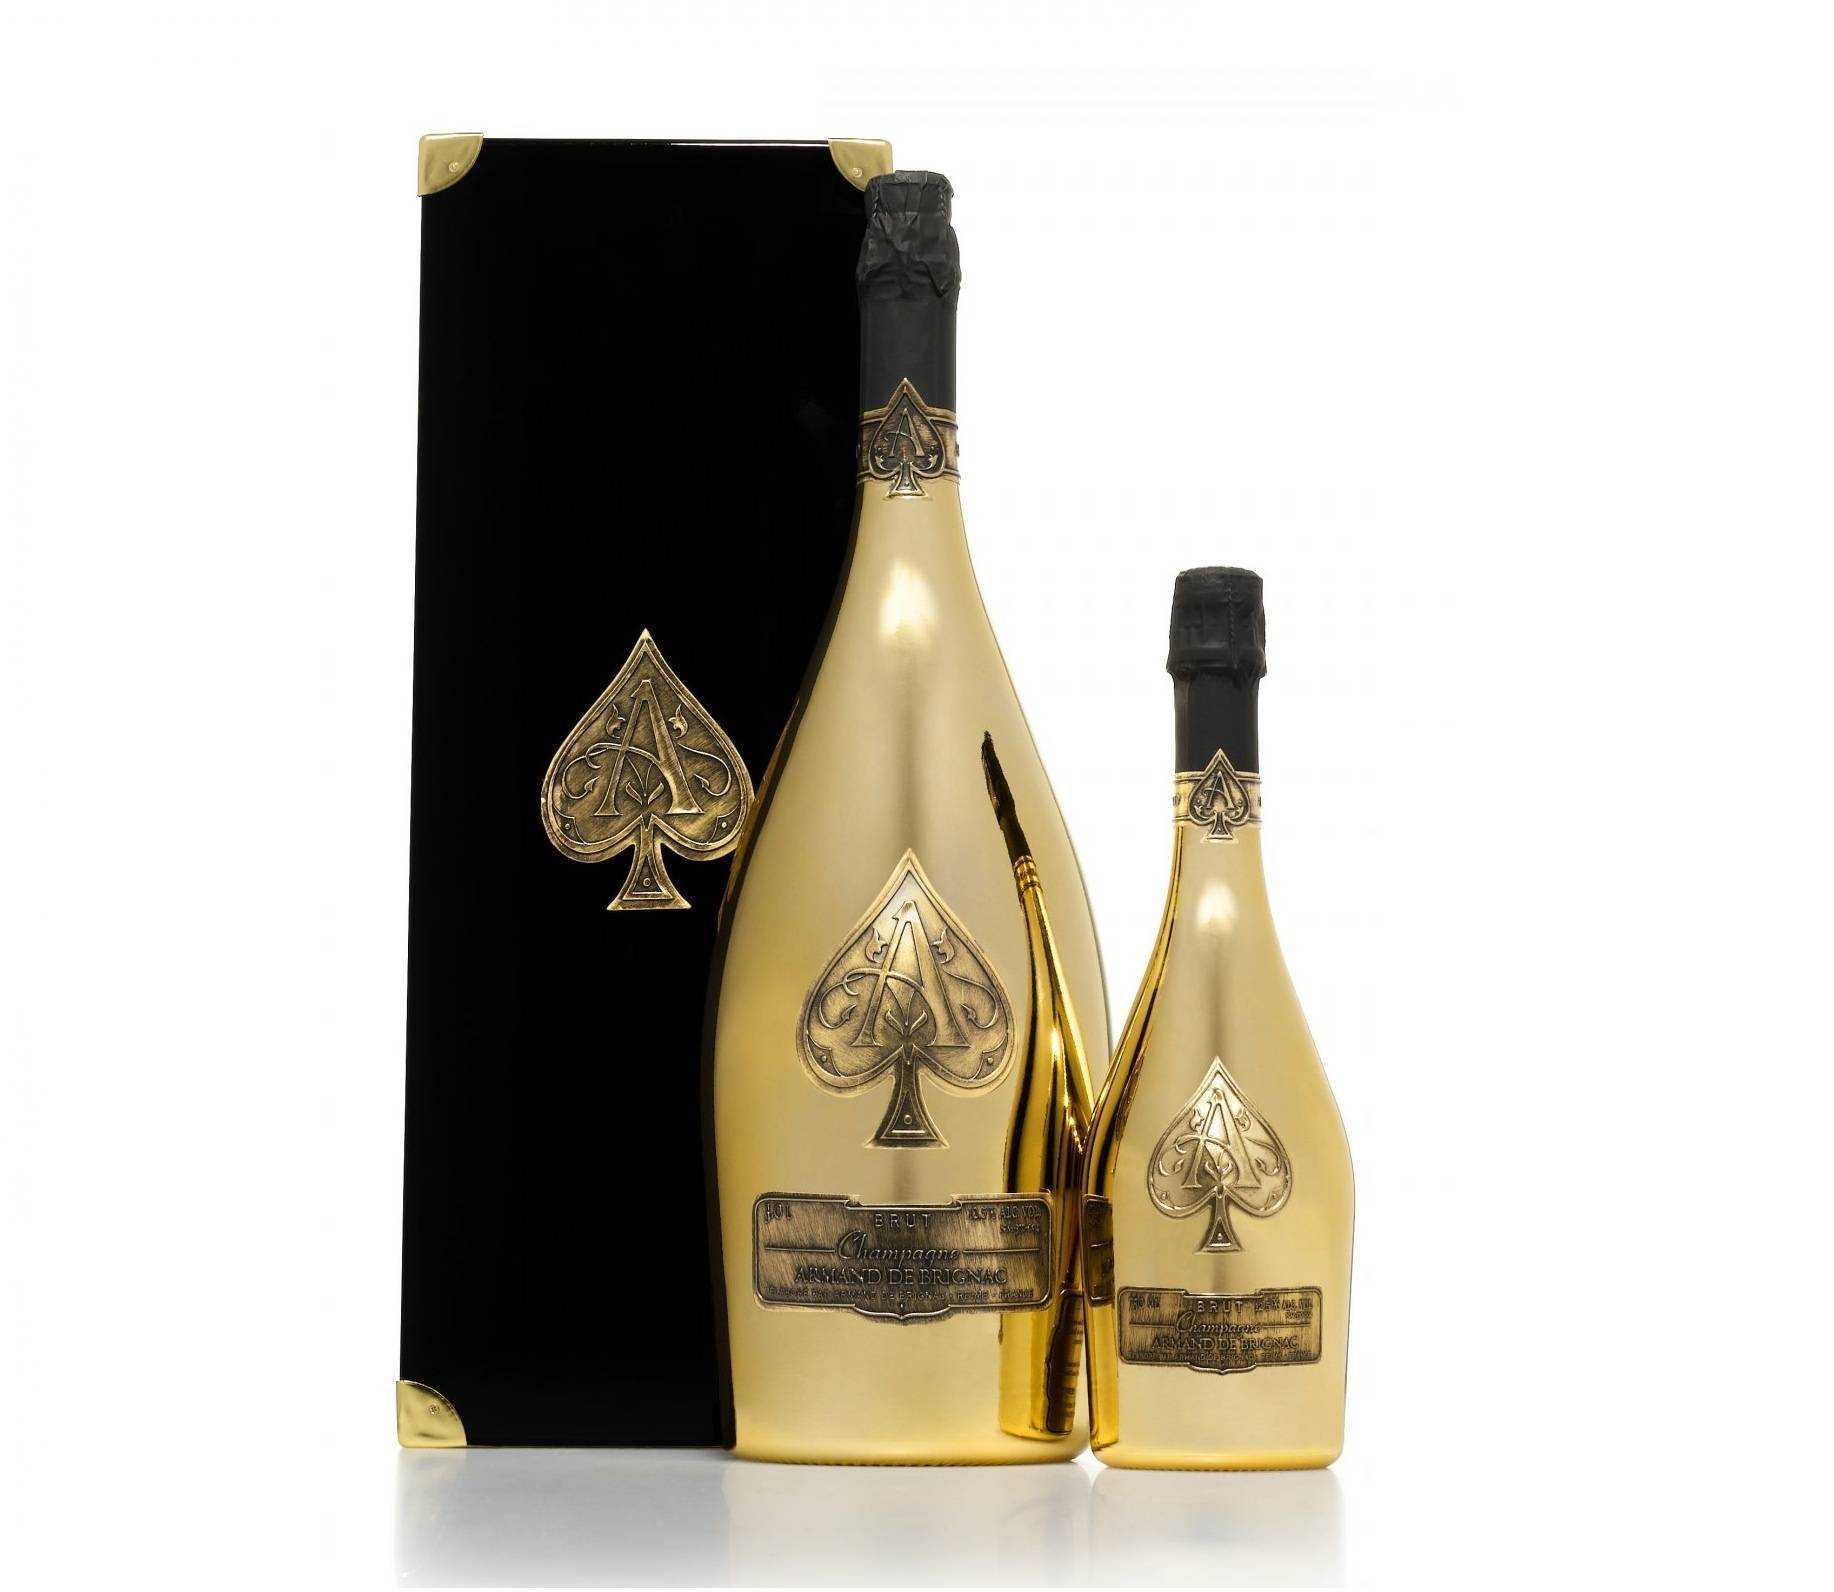 Золотое шампанское: коллекция вин с драгоценными хлопьями в бутылке и уникальной упаковкой, среди которых боско, aviva gold, vogue, российское "золотые традиции"